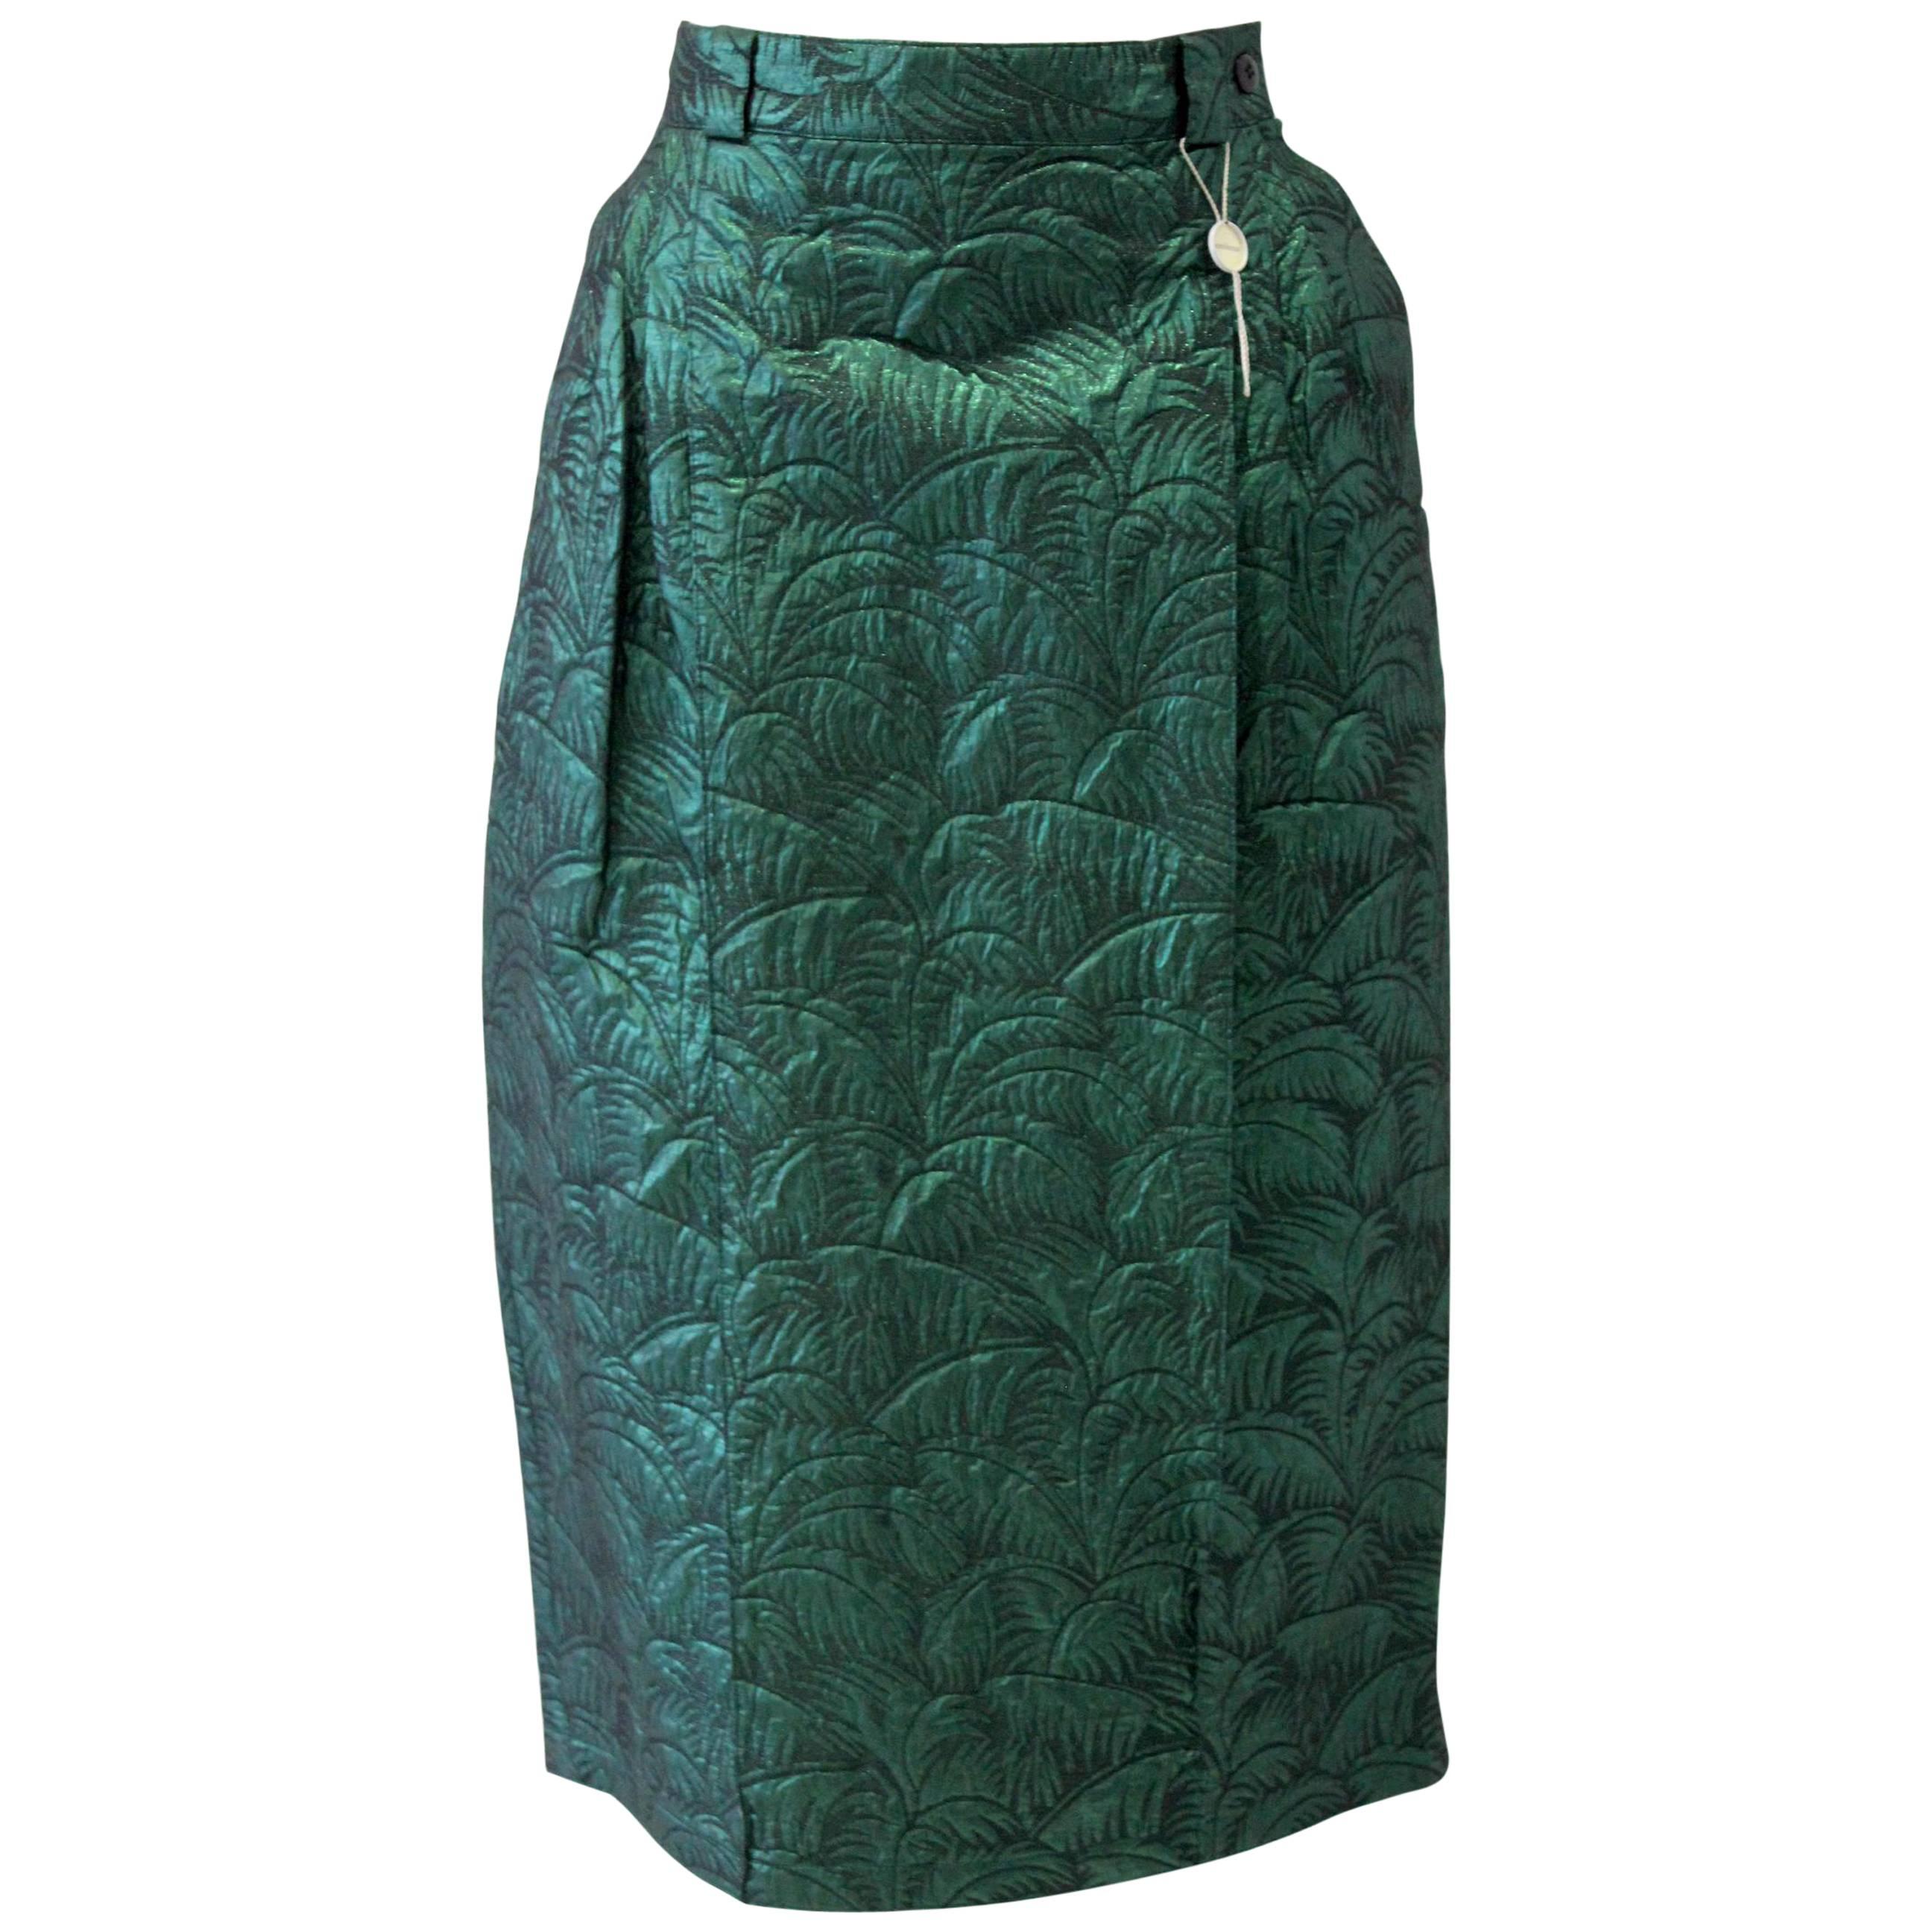 Rare Gianni Versace Brocade Green Lurex High Waist Skirt For Sale